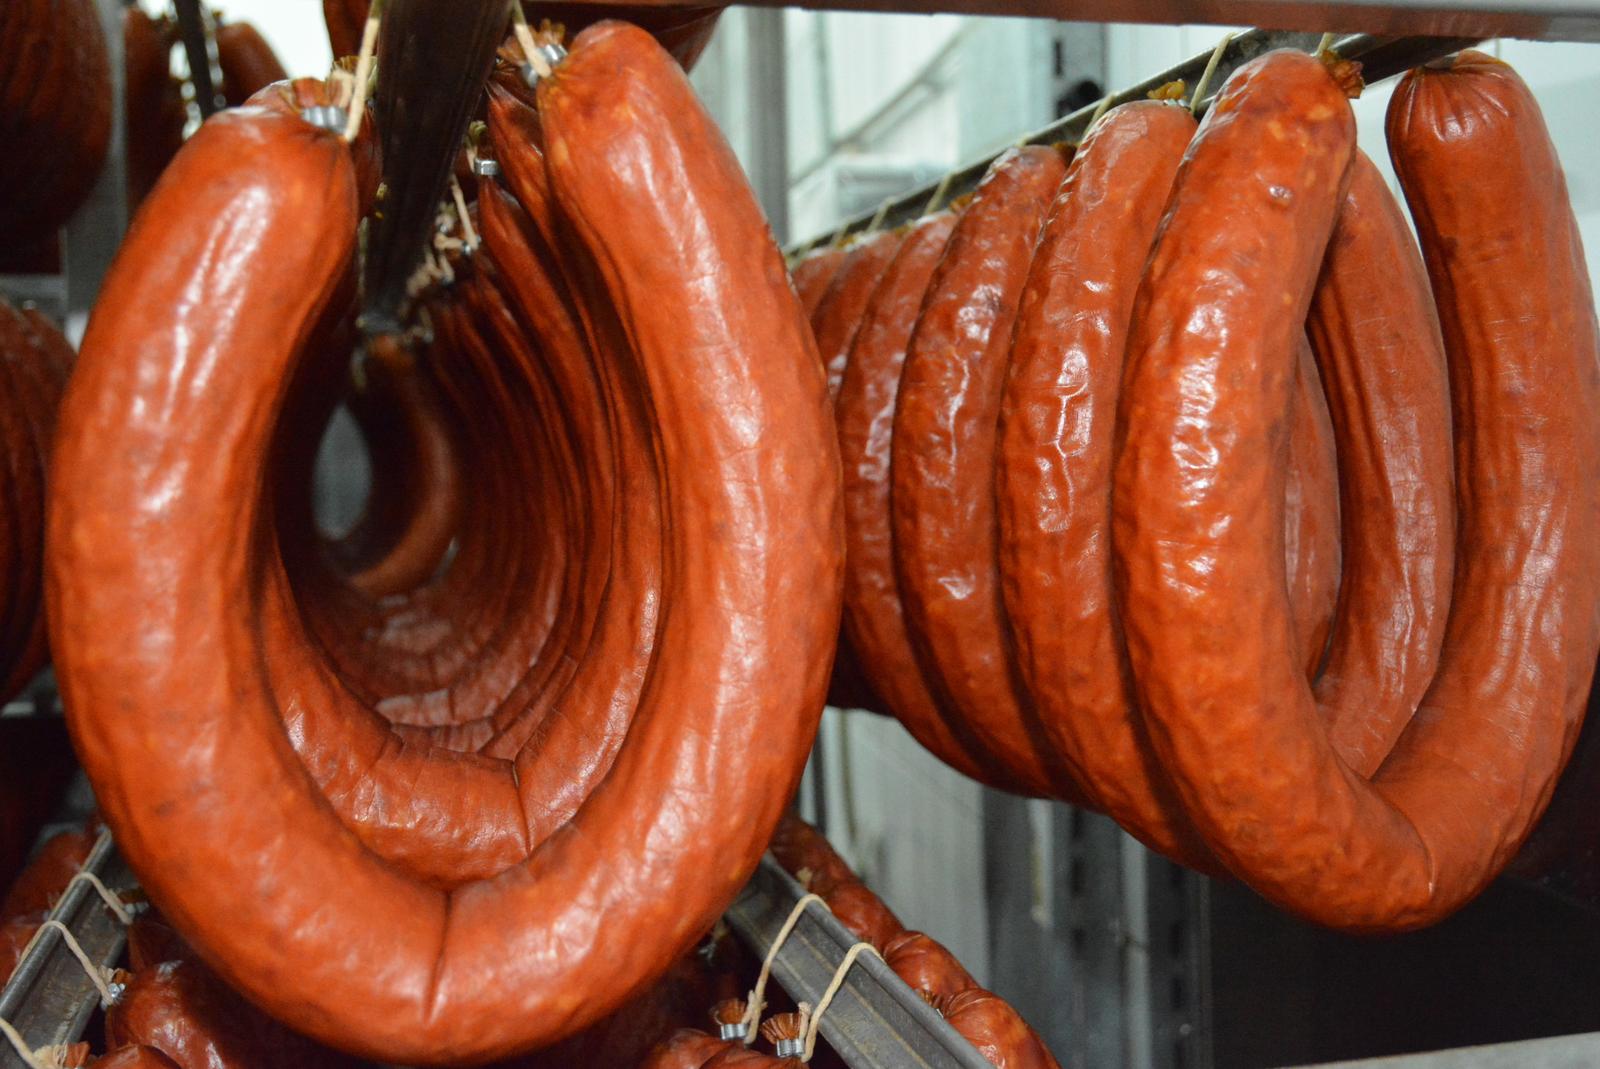 23.03.2015., Koprivnica, Mesna industrija Danica - Koprivnicka Danica  koja zaposljava 500-ak djelatnika jedna je od najvecih hrvatskih mesnih industrija, a koja je u 100% vlasnistvu Podravke. Izgradjena je 1973. godine kao Podravkin mesni kompleks u sklopu industrijske zone na Danici. Proizvodnja kobasicarskih proizvoda iz danasnjeg asortimana zapocinje 1975. godine, a trajne kobasice se proizvode od 1996. godine. Tvrtka Danica d.o.o. postaje 1995. godine, a 1996. izgradjen je novi pogon za proizvodnju kobasica i suhomesnatih proizvoda, a iste godine pocinje i proizvodnja smrznuto oblikovanog mesa. Kvaliteta se jamci certifikatima, HACCP, SOP, ISO 9001:2000, HALAL, HR 139. U sklopu Danice su tvornice, rasijecanje mesa, proizvodnja mesnih konzervi, proizvodnja smrznutih oblikovanih proizvoda, proizvodnja kobasicarskih i suhomesnatih proizvoda, proizvodnja peradarskih proizvoda, te proizvodnja obarenih i polutrajnih kobasicarskih i suhomesnatih proizvoda. Medju ostalim govedji gulas i kokosja pasteta koja se u Podravci proizvode od 1957. godine i danasnji su lider proizvoda s tradicijom. U konzervama se proizvode gotova jela (govedji gulas, grah s kobasicom), pastete, naresci (govedji, pileci, pureci) i jela na bazi mesa (hase, mesni ragu), a pokraj navedenog za trziste se proizvodi i svjeze meso, te smrznuto oblikovano meso (cevapcici, pljeskavice - danburger). Proizvodni pogoni za suhomesnate proizvode, polutrajne kobasice, kobasice i obareno meso. Medju ostalim se proizvode razne vrste salama, pancete, slanina,  kranjske kobasice, rolane lopatice, sunke.     rPhoto: Damir Spehar/PIXSELL